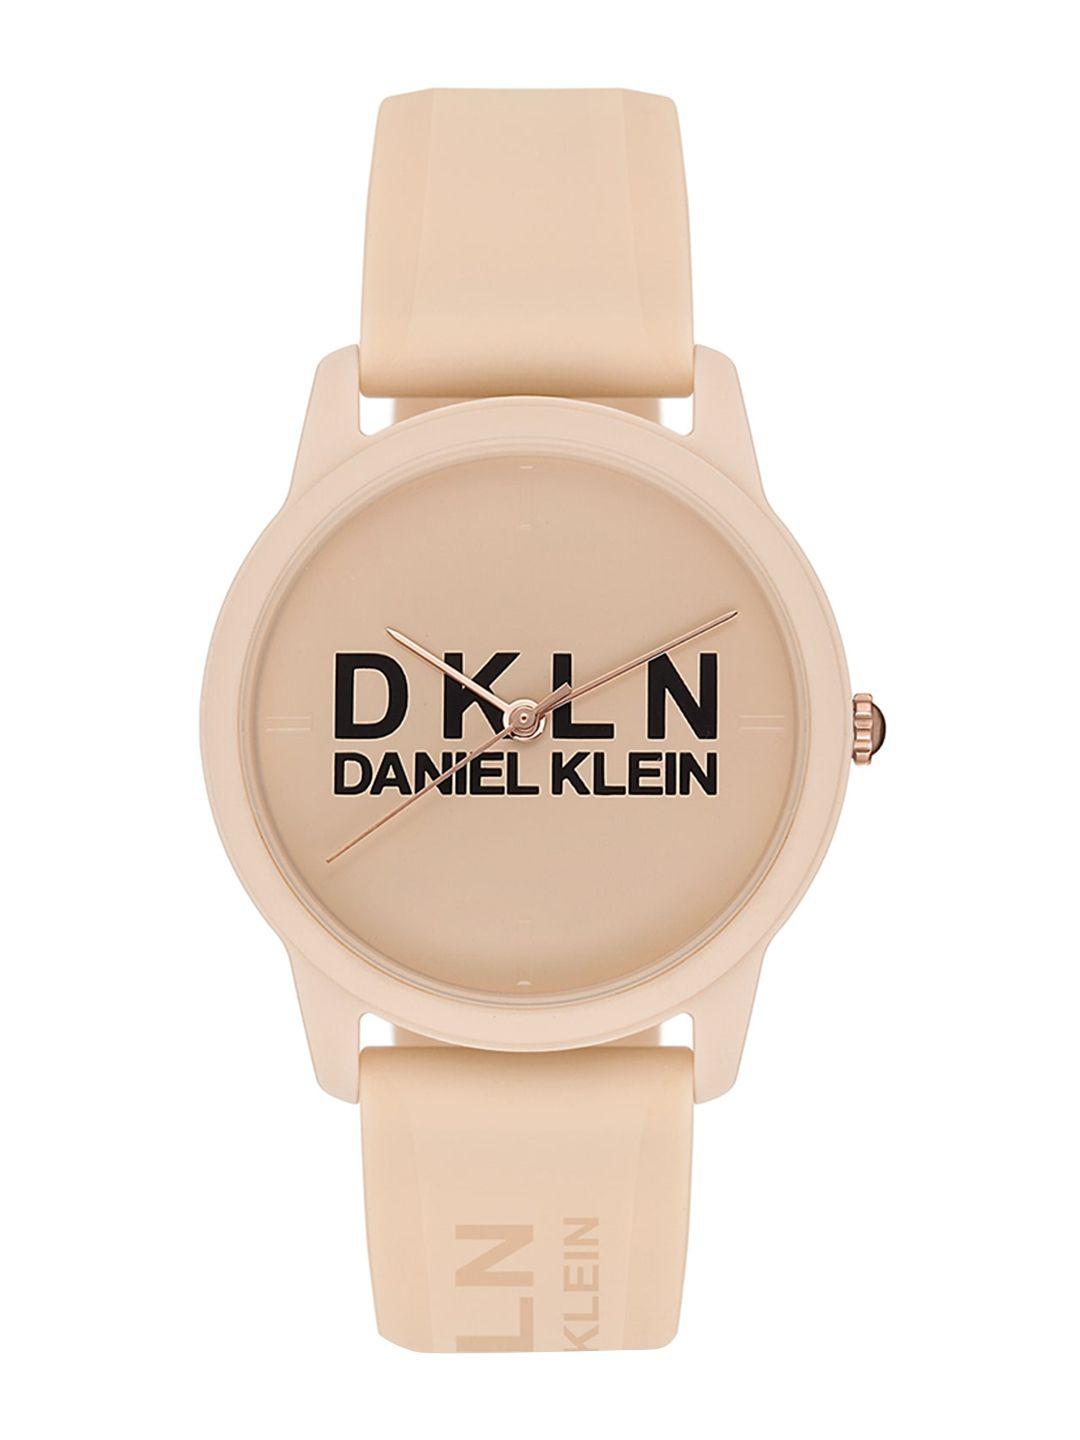 daniel klein women printed dial & straps analogue watch dk 1 12645-7